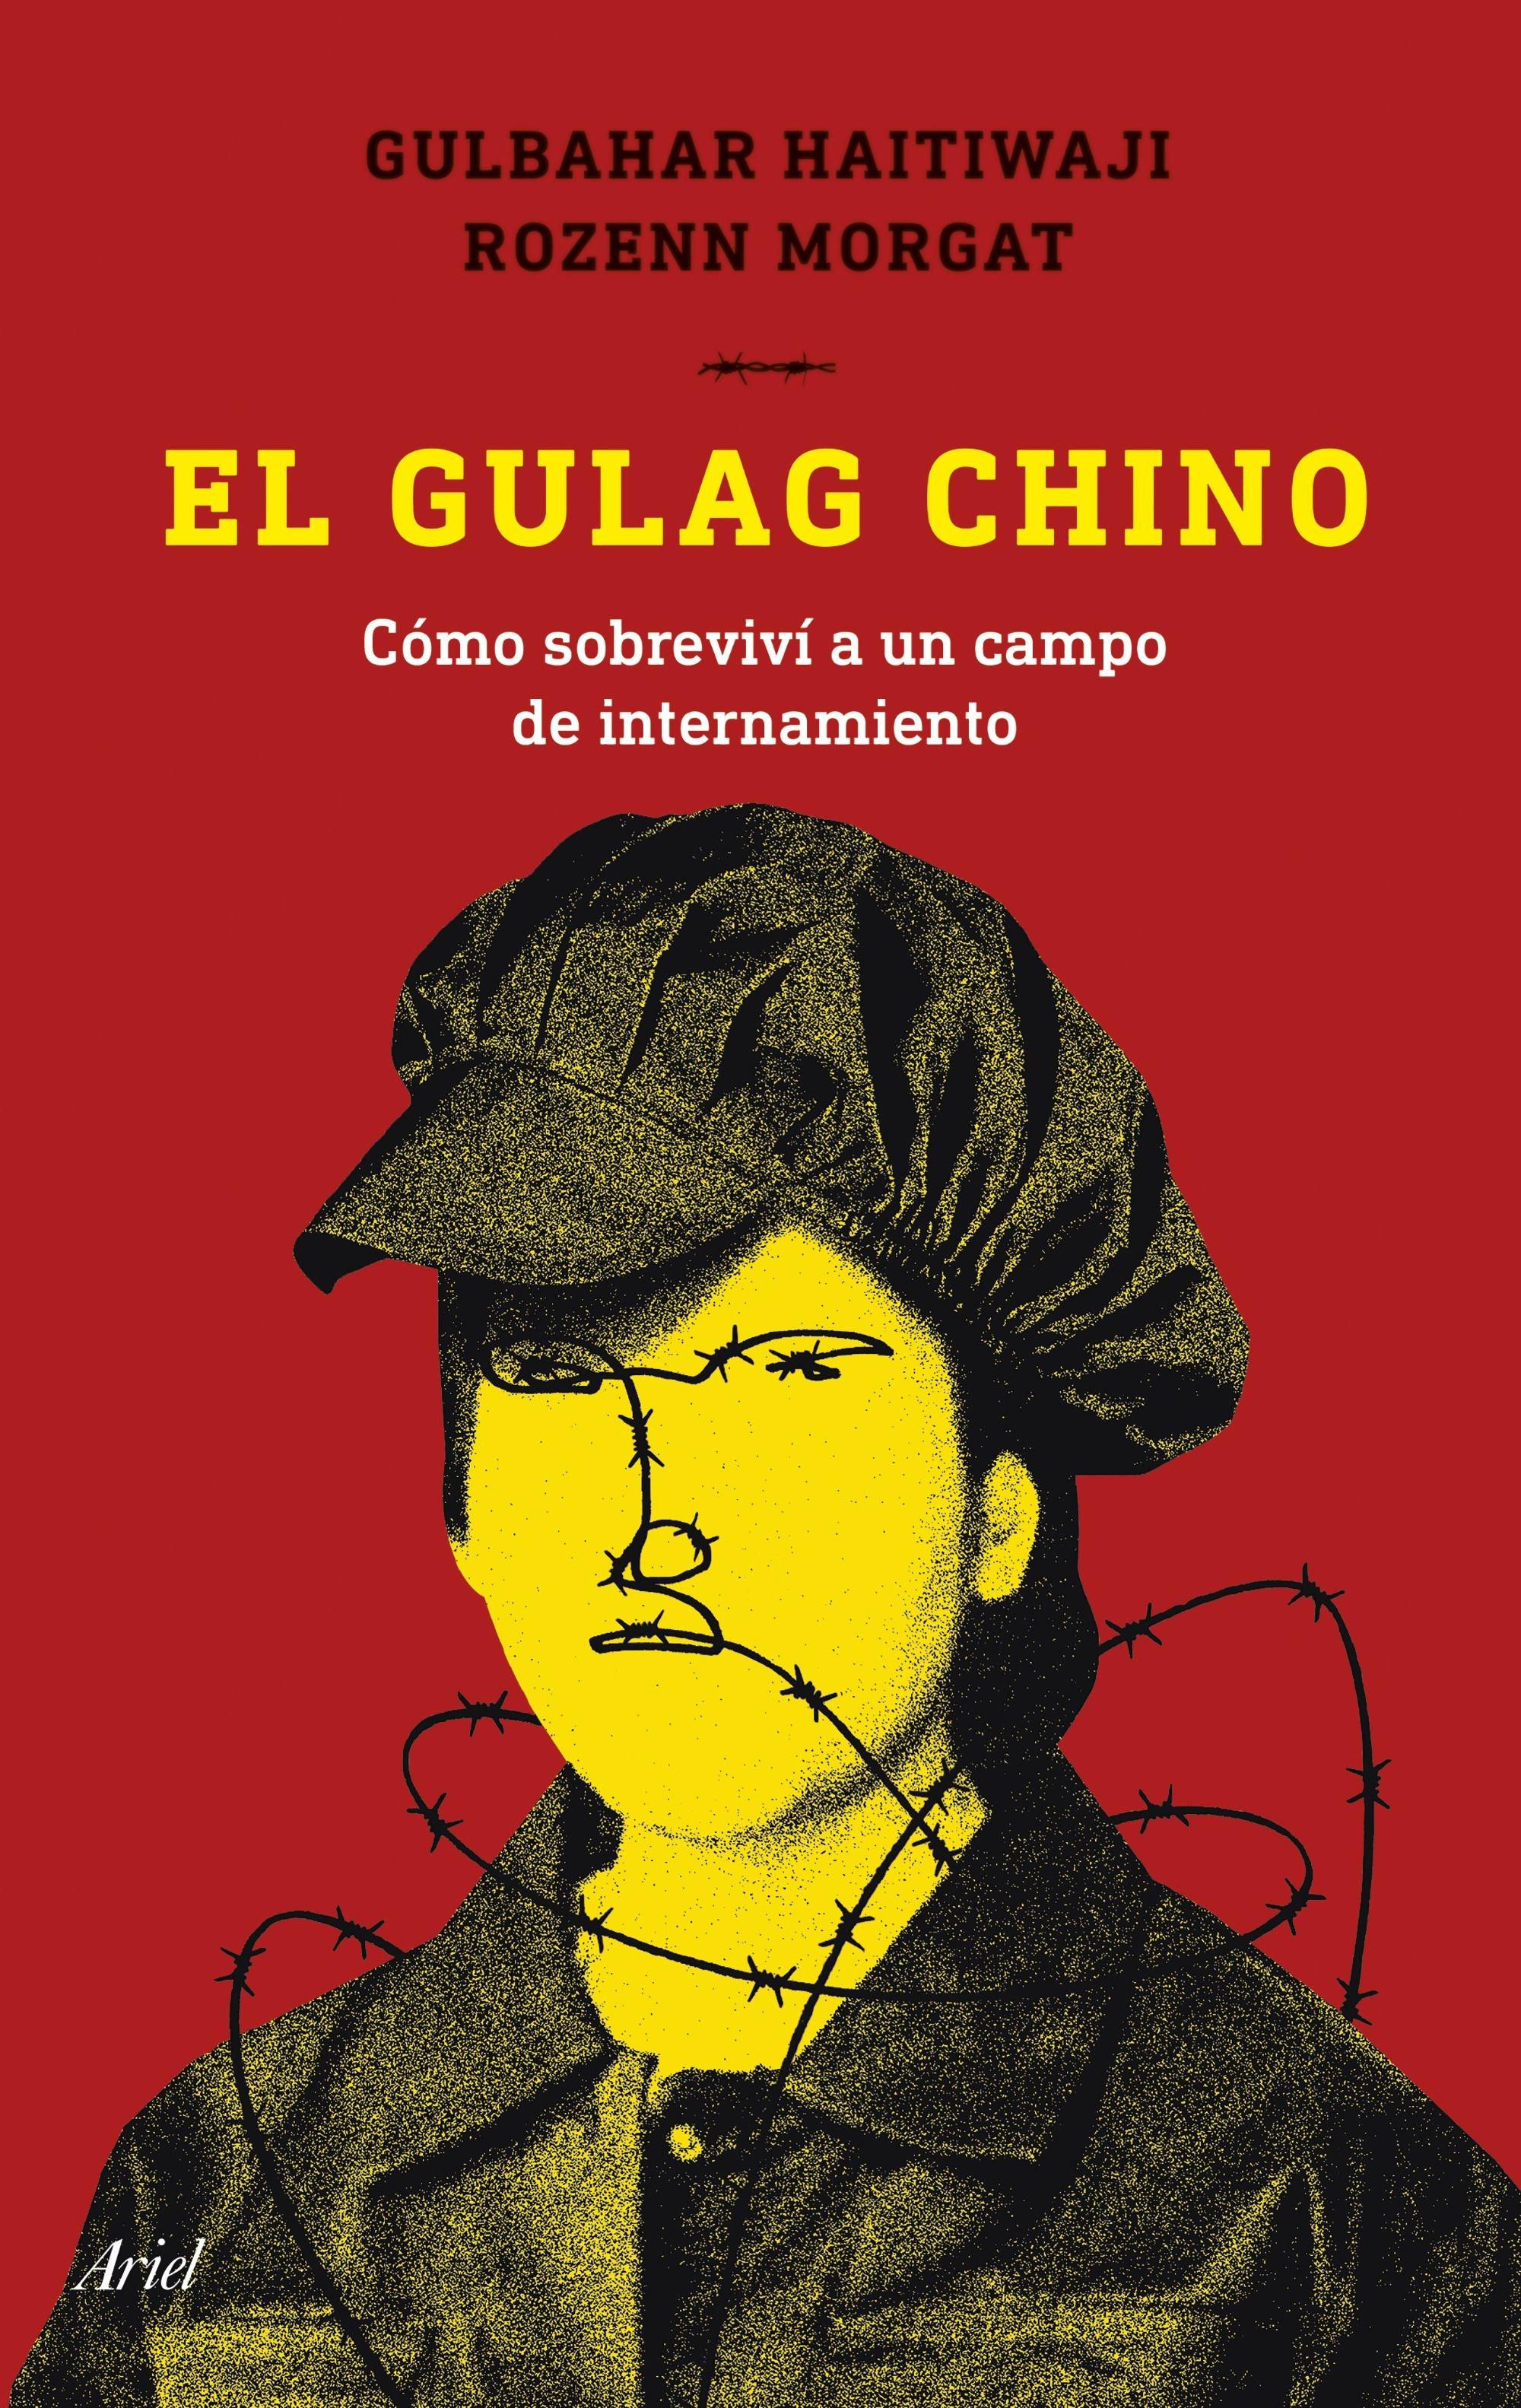 El Gulag Chino "Cómo Sobreviví a un Campo de Internamiento"